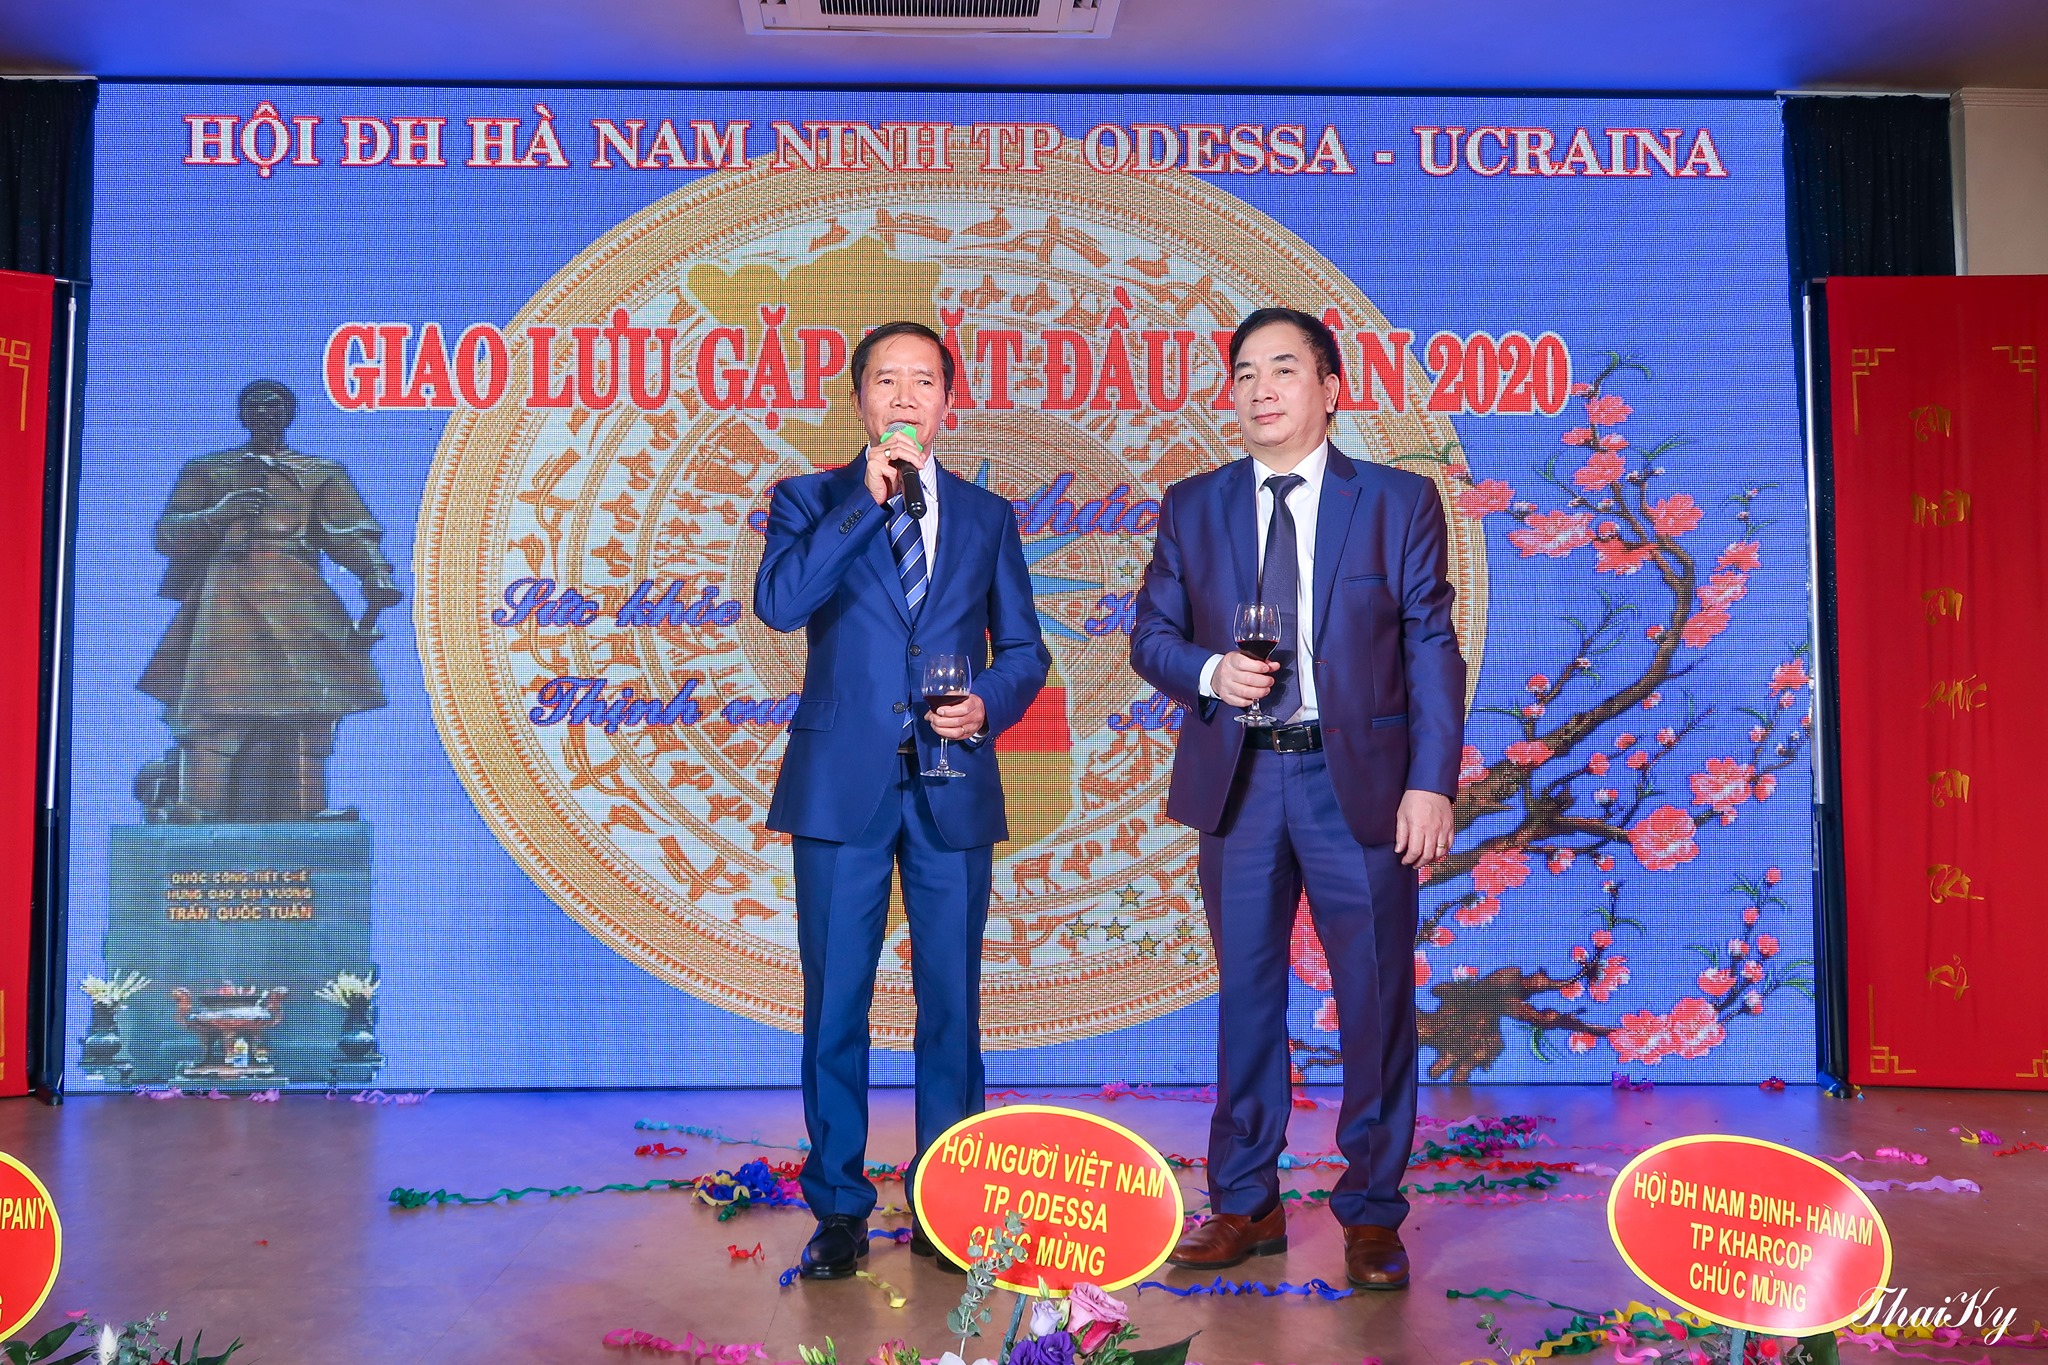 Thư cảm ơn của hội đồng hương Hà Nam Ninh tại Odessa Ucraina